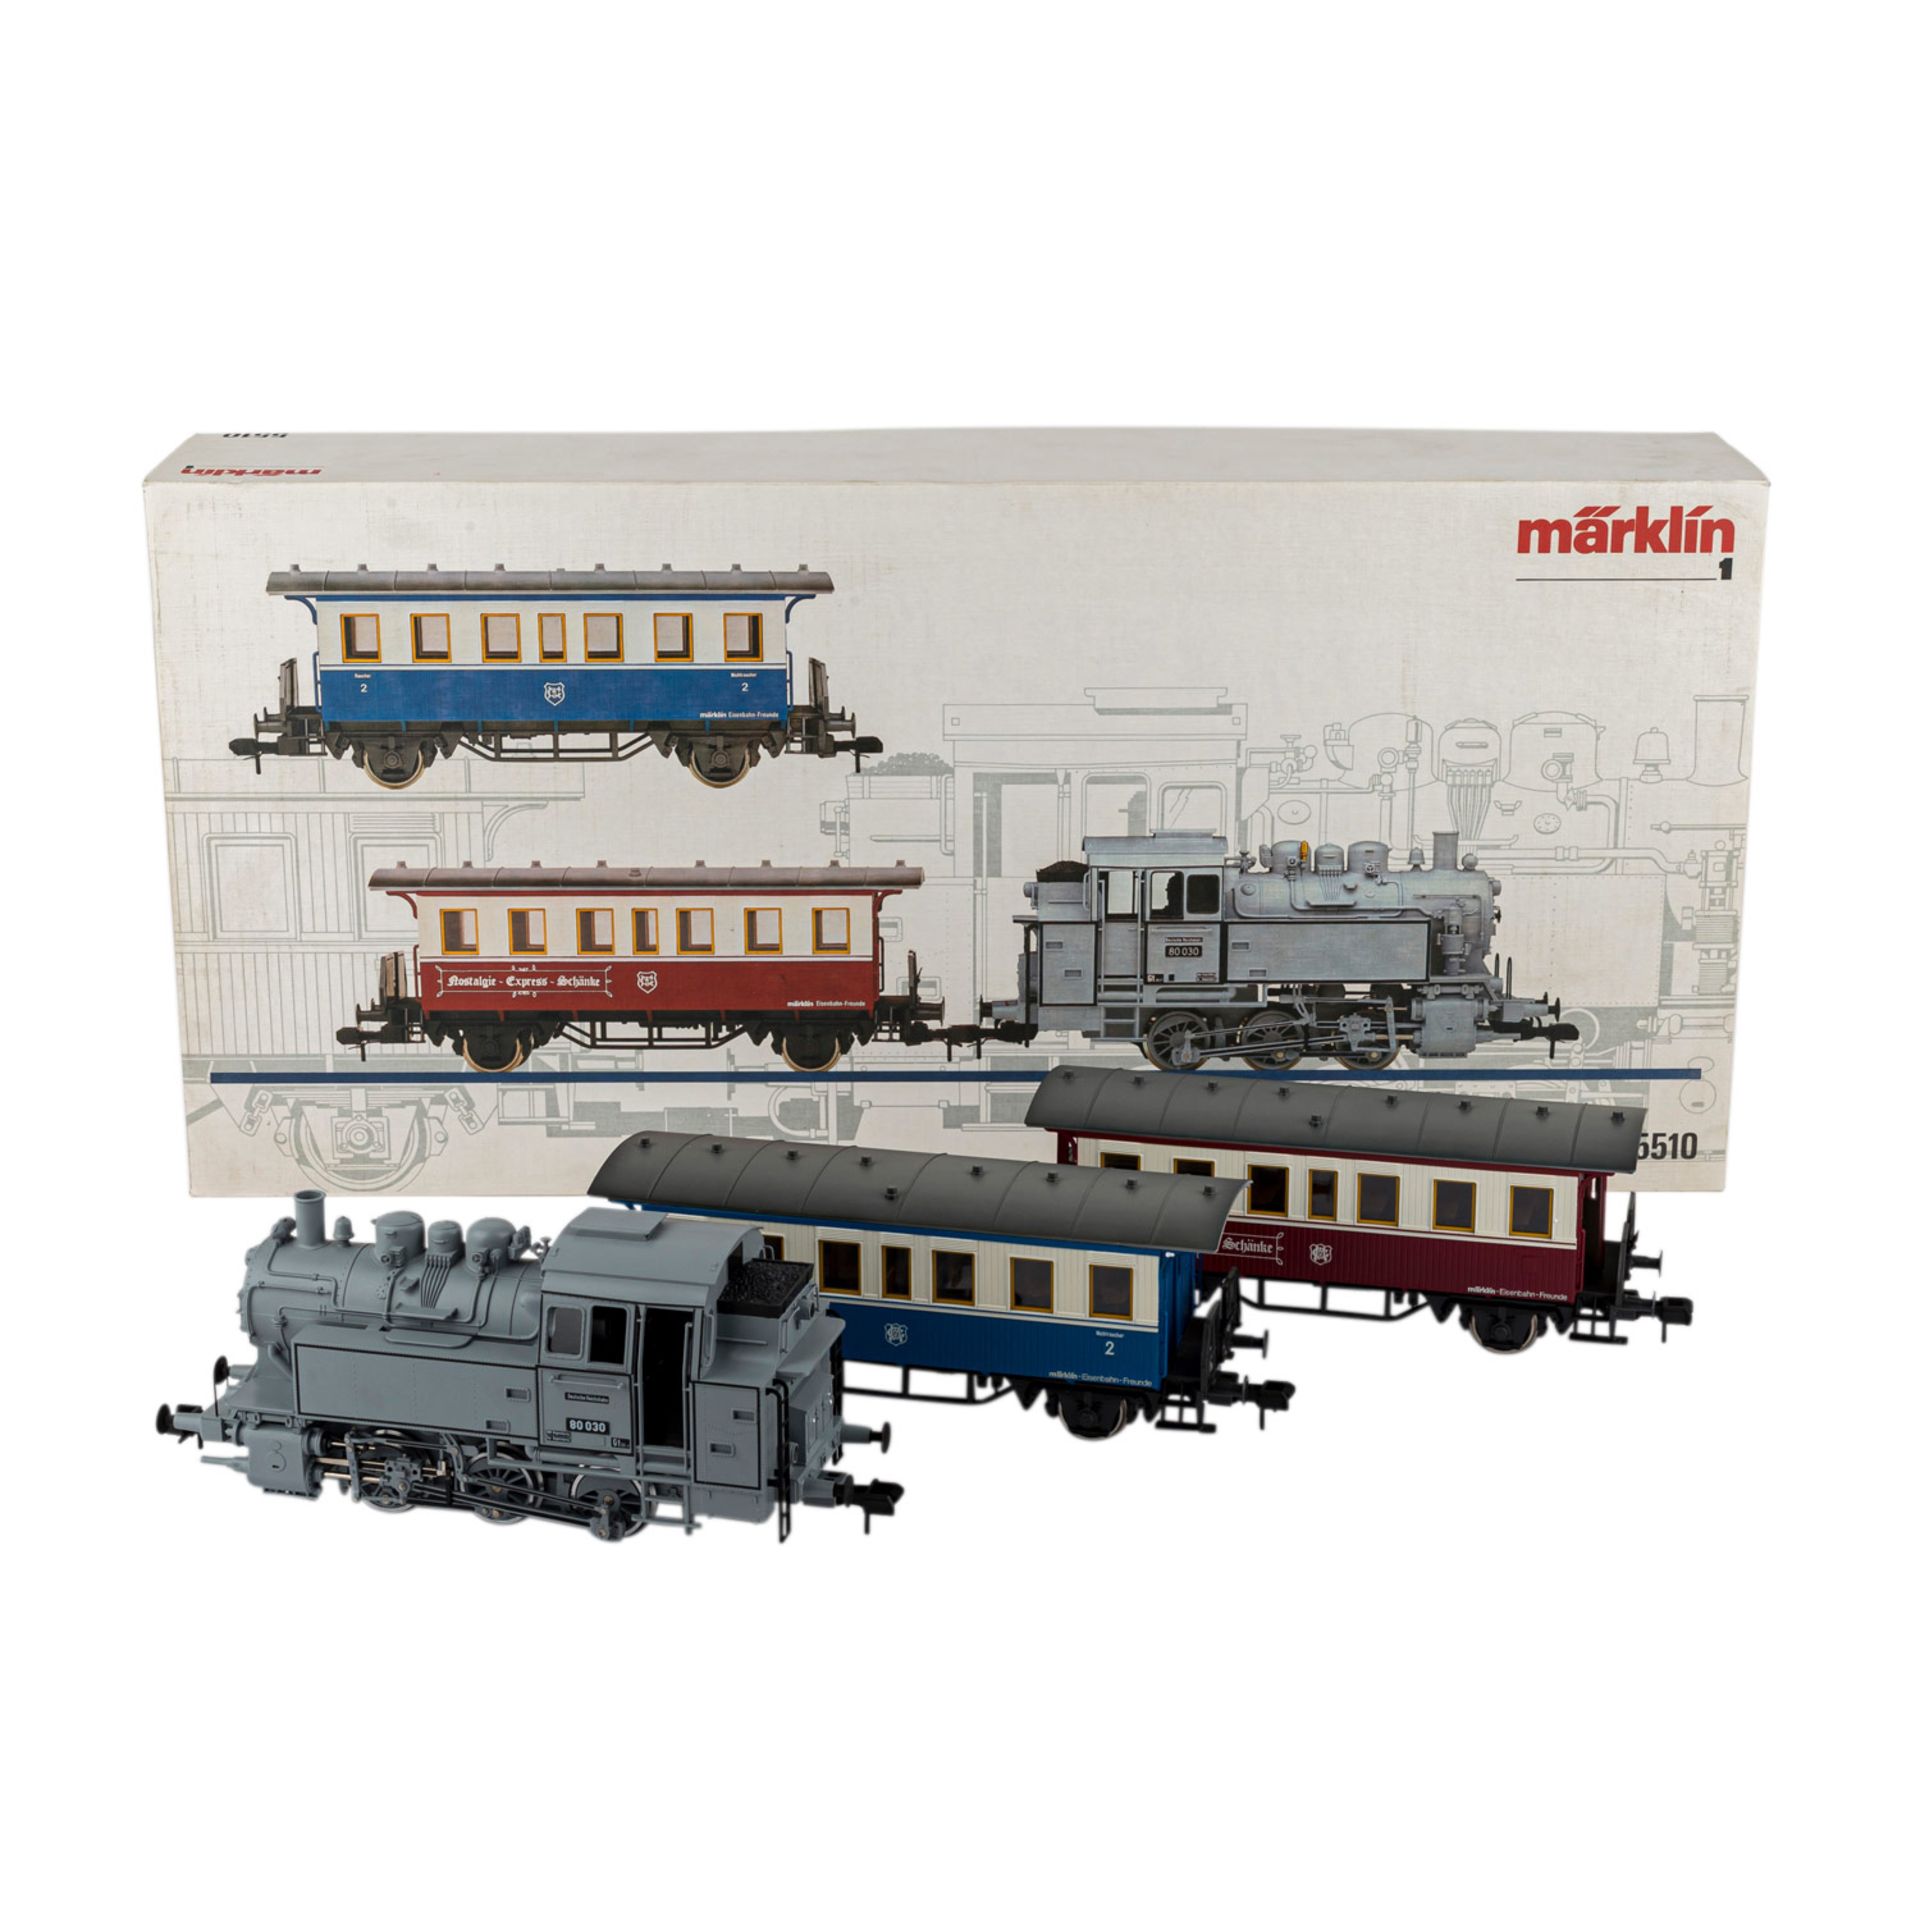 MÄRKLIN Nostalgie-Zugset "5510", Spur 1,bestehend aus graufarbener Tenderlok BN 80030, L ca. 32